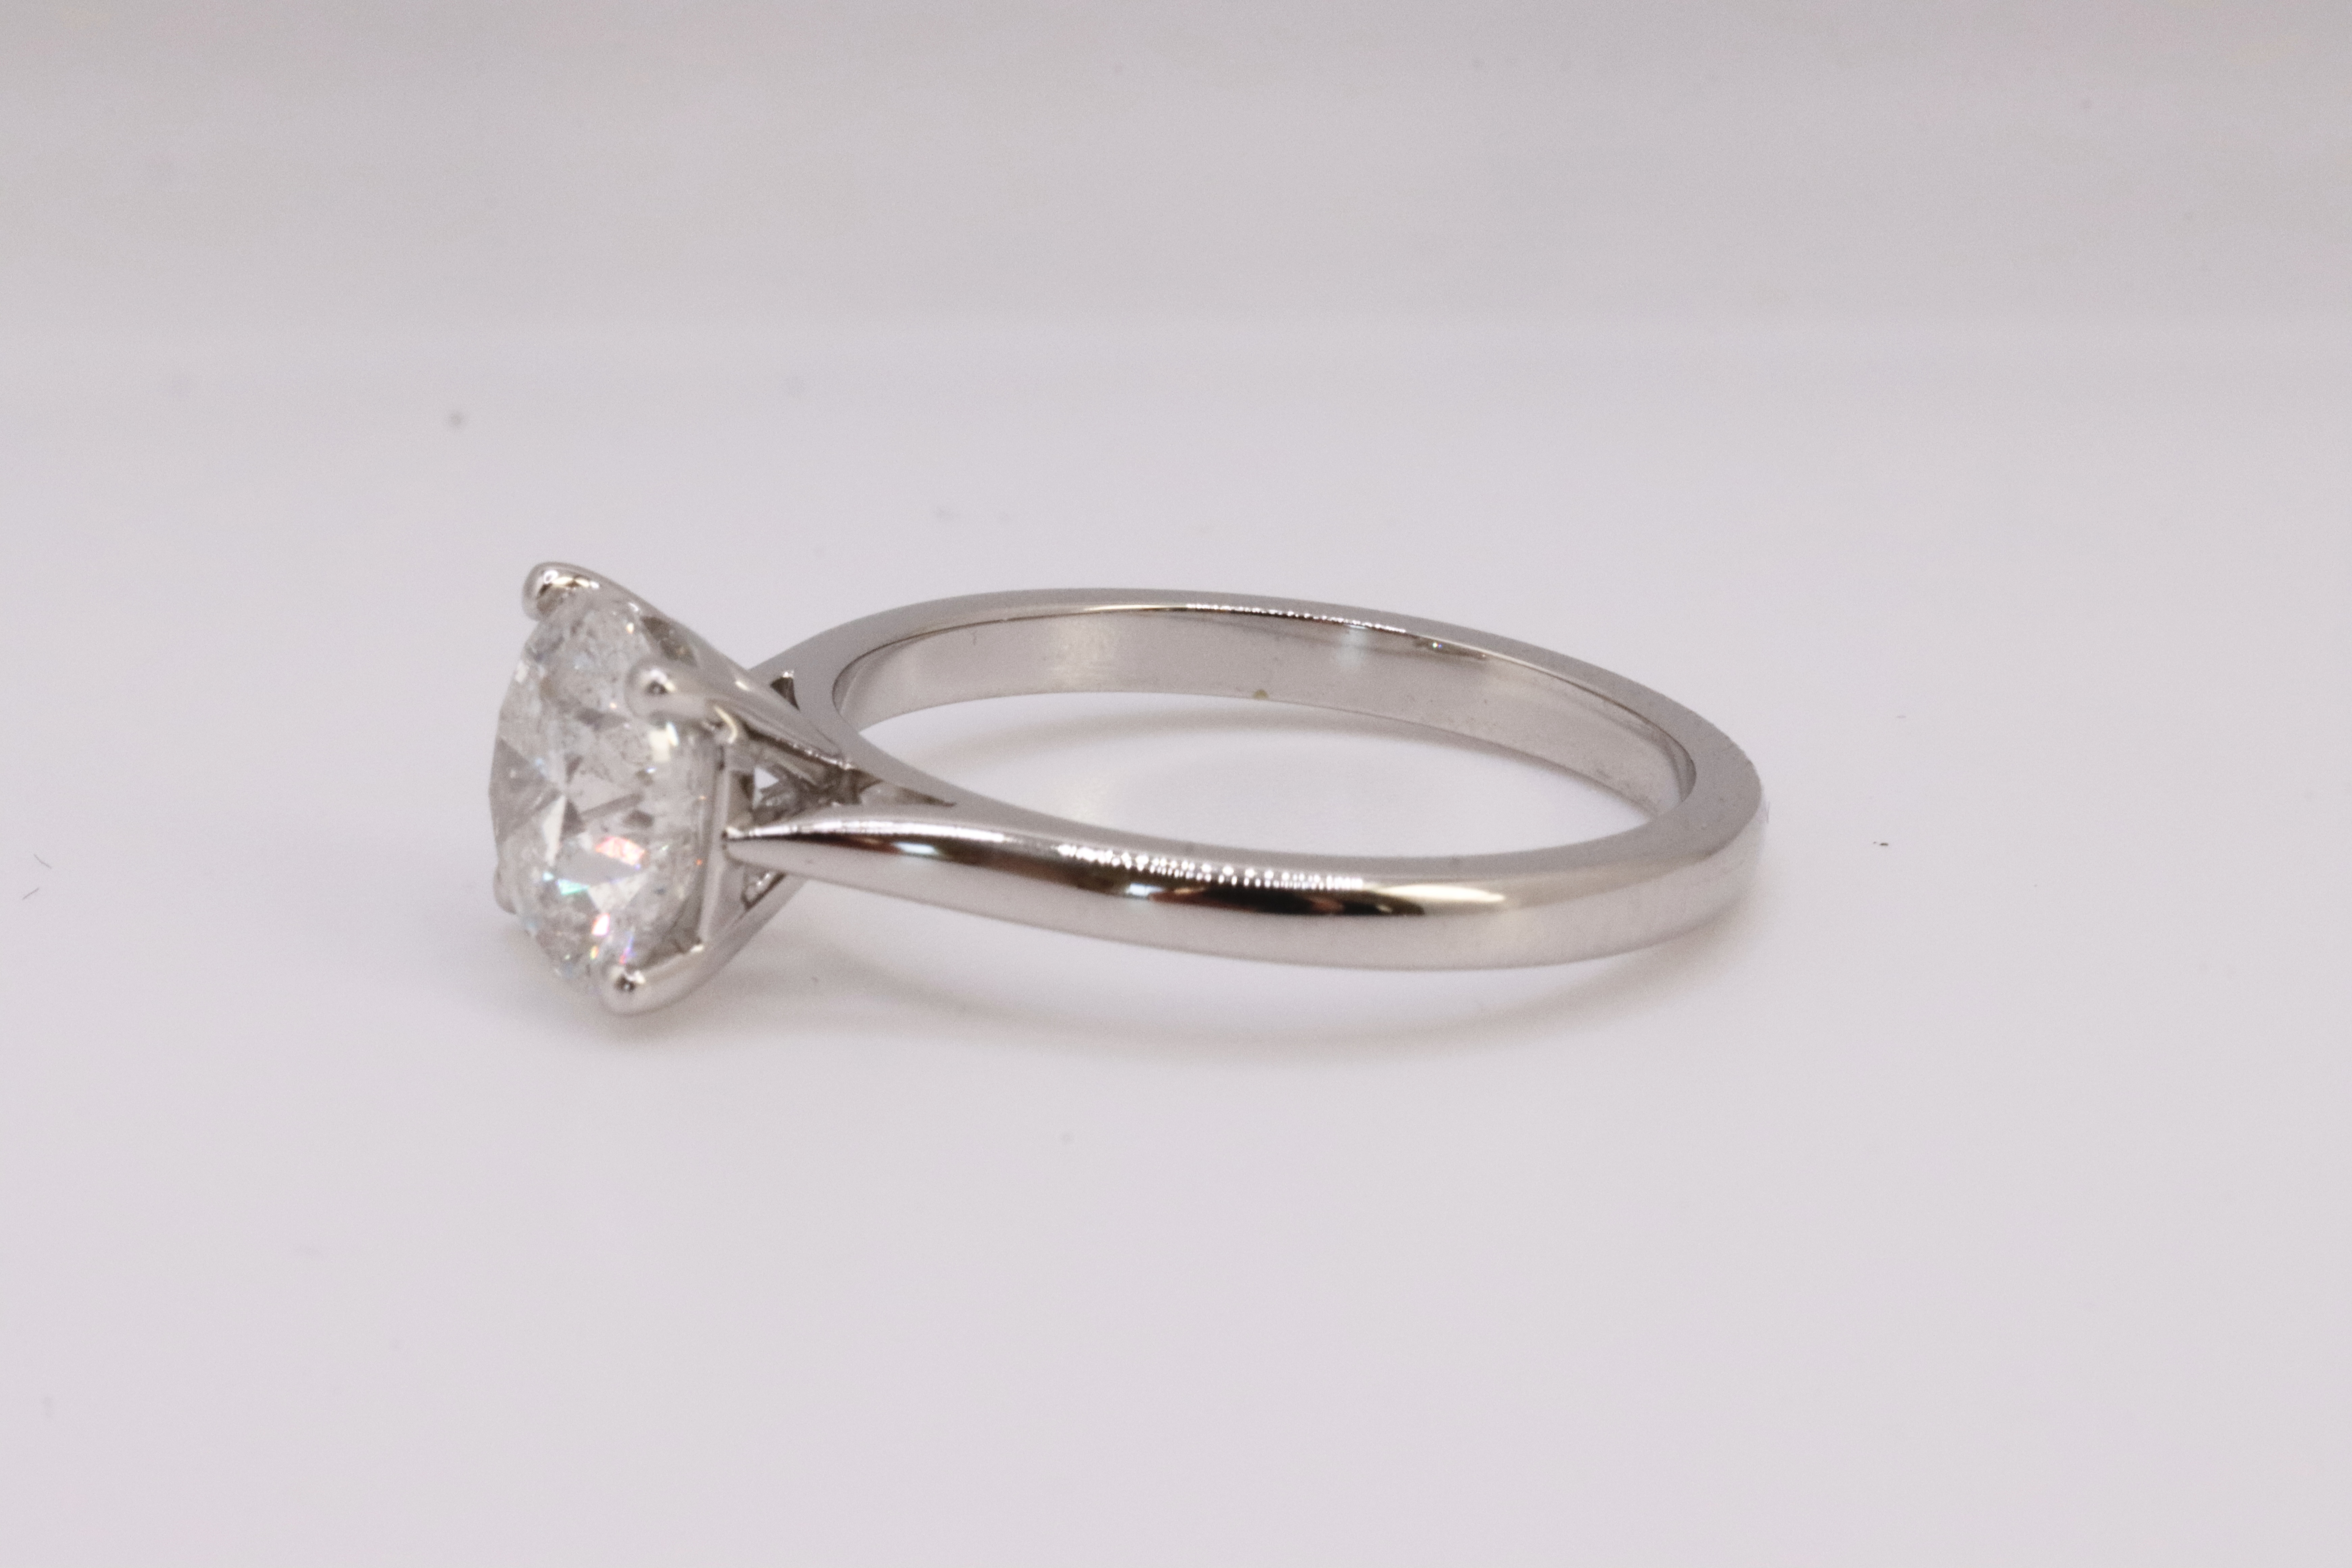 ** ON SALE ** Round Brilliant Cut Natural Diamond 2.00 Carat Colour D Clarity VS2 Platinum Ring- DGI - Image 7 of 8